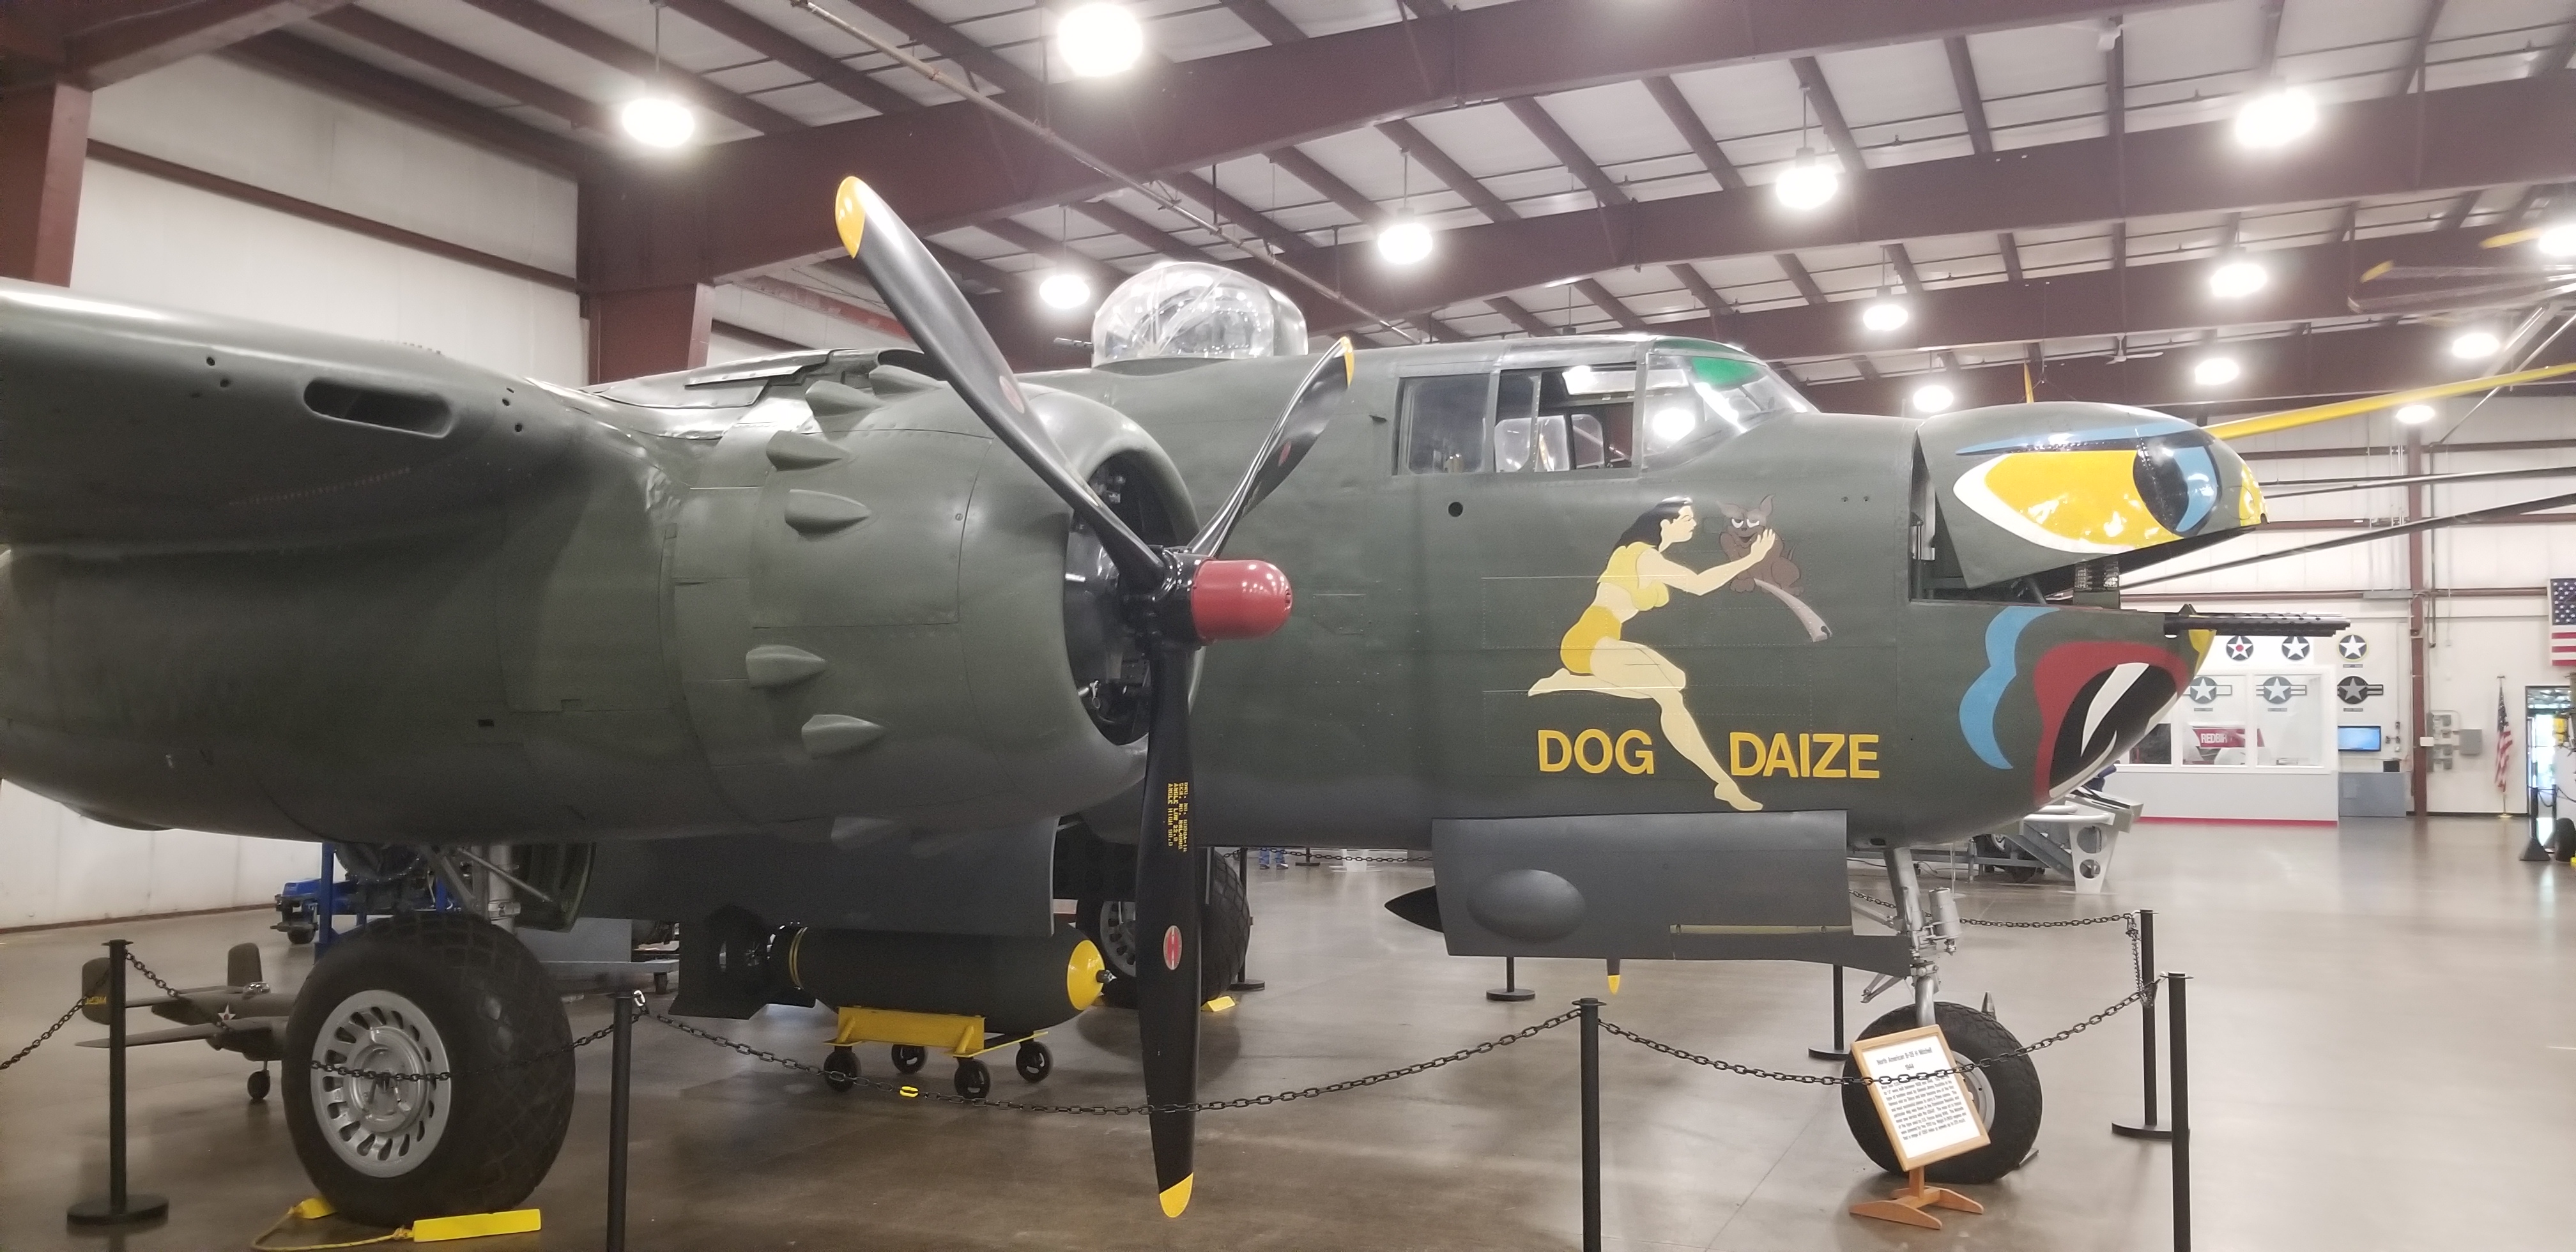 File:B-25H Dog Daize.jpg - Wikipedia